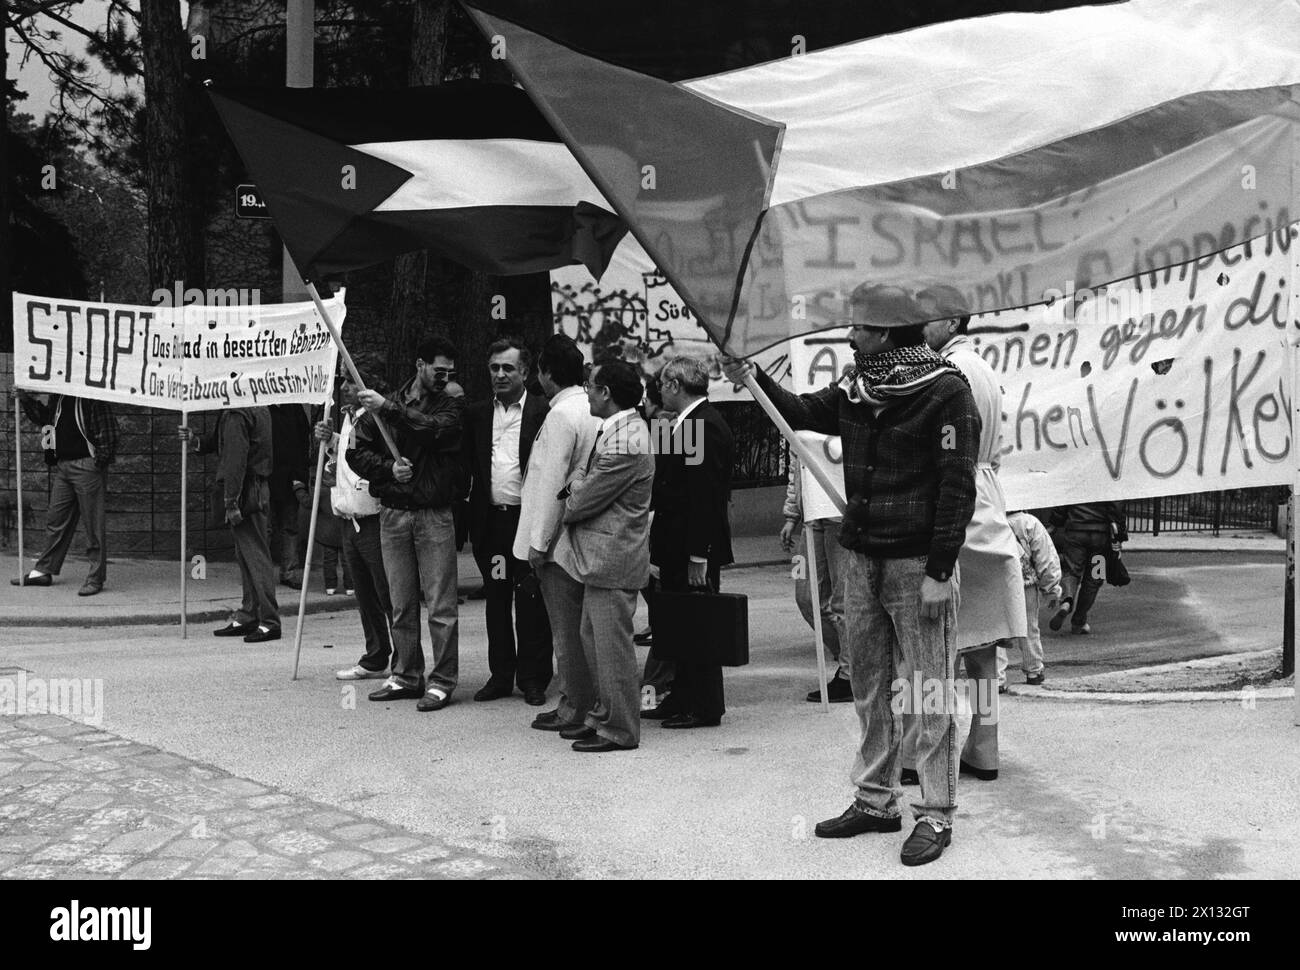 Wien am 21. April 1988: Die Palästinensische Gemeinschaft Österreichs demonstrierte vor der israelischen Botschaft in Wien im Rahmen des 40. Jahrestages des israelischen Staates. - 19880421 PD0003 - Rechteinfo: Rechte verwaltet (RM) Stockfoto